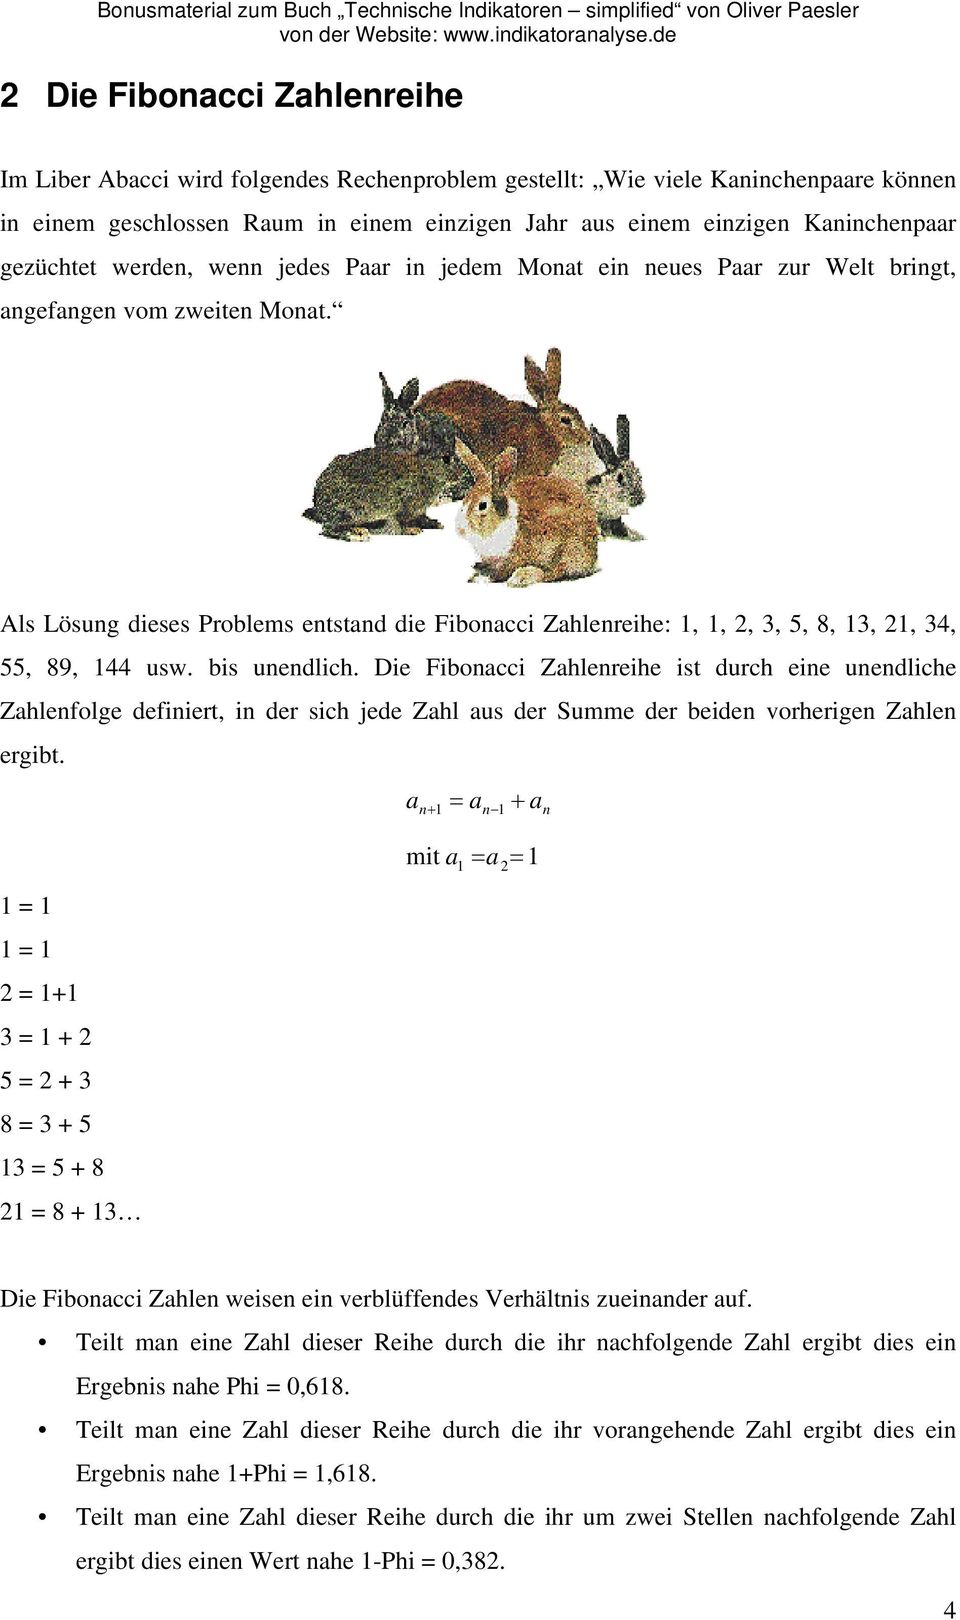 Als Lösung dieses Problems entstand die Fibonacci Zahlenreihe: 1, 1, 2, 3, 5, 8, 13, 21, 34, 55, 89, 144 usw. bis unendlich.